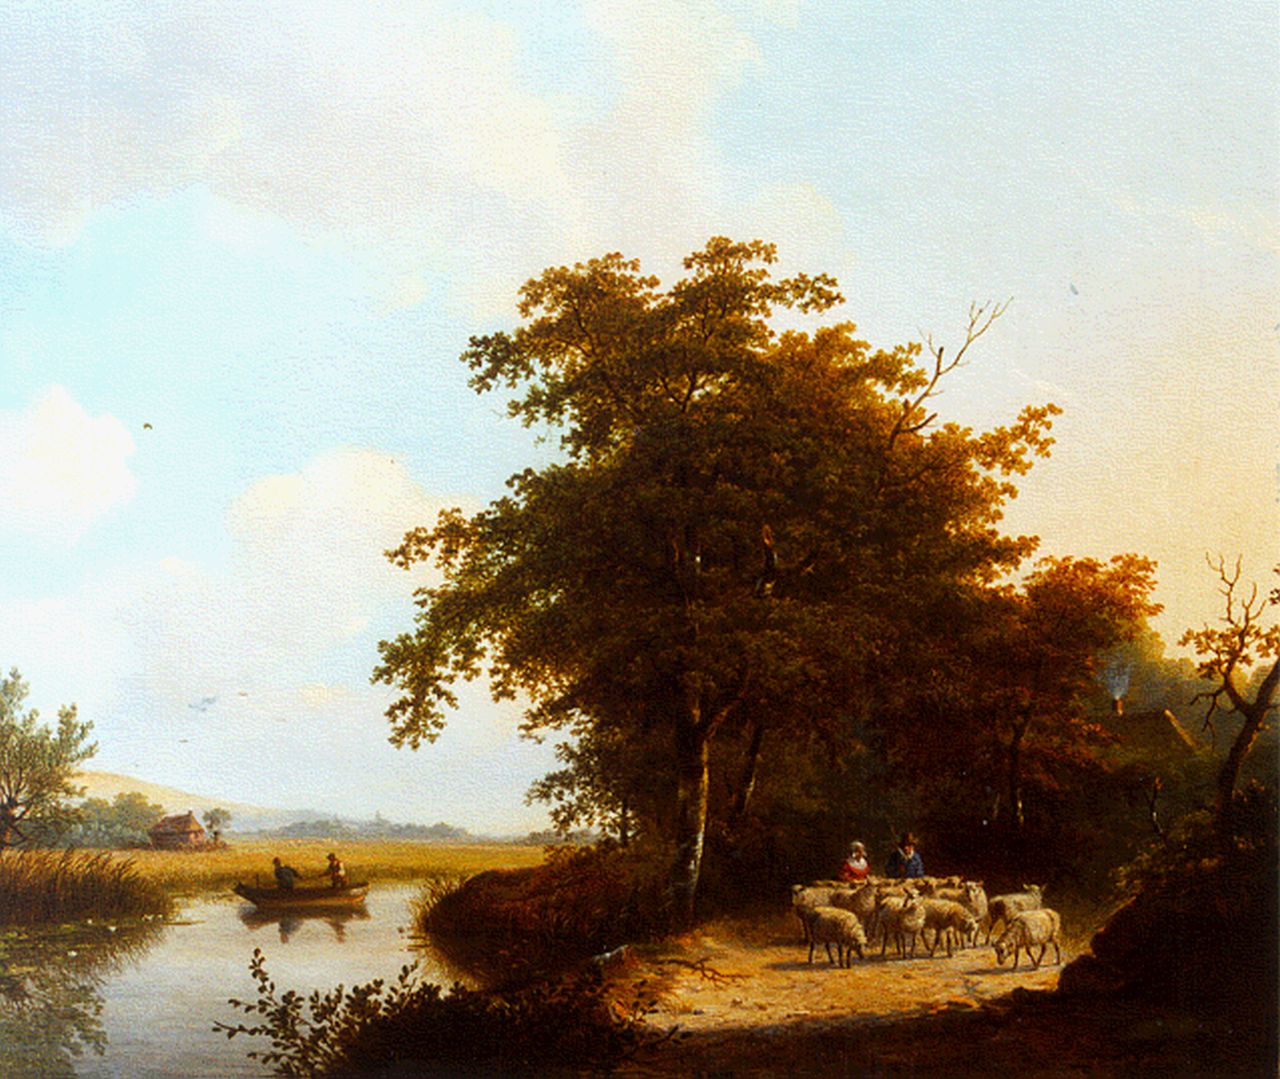 Stok J. van der | Jacobus van der Stok, Boomrijk landschap met riviertje, olieverf op doek 50,4 x 59,0 cm, gesigneerd rechtsonder en gedateerd '30